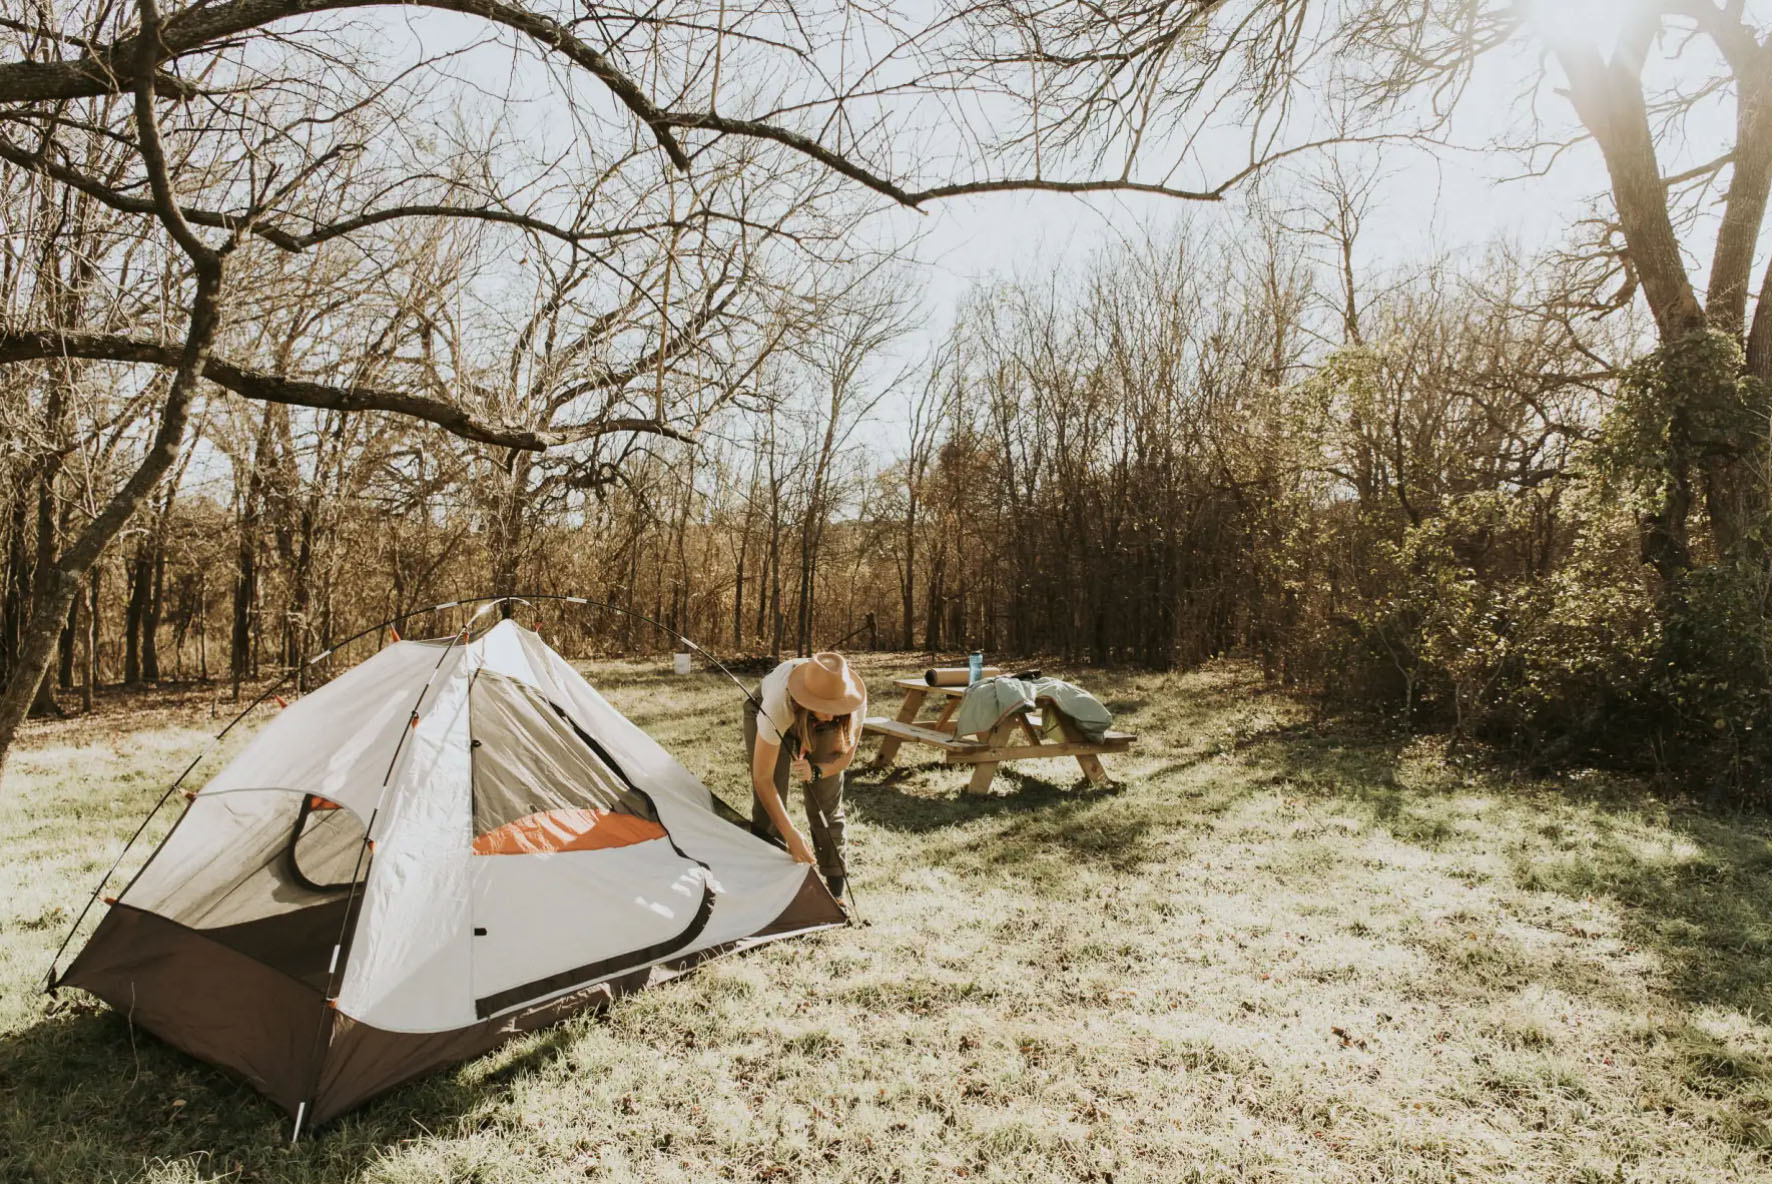 Richardson Creek camping en Texas cerca de free